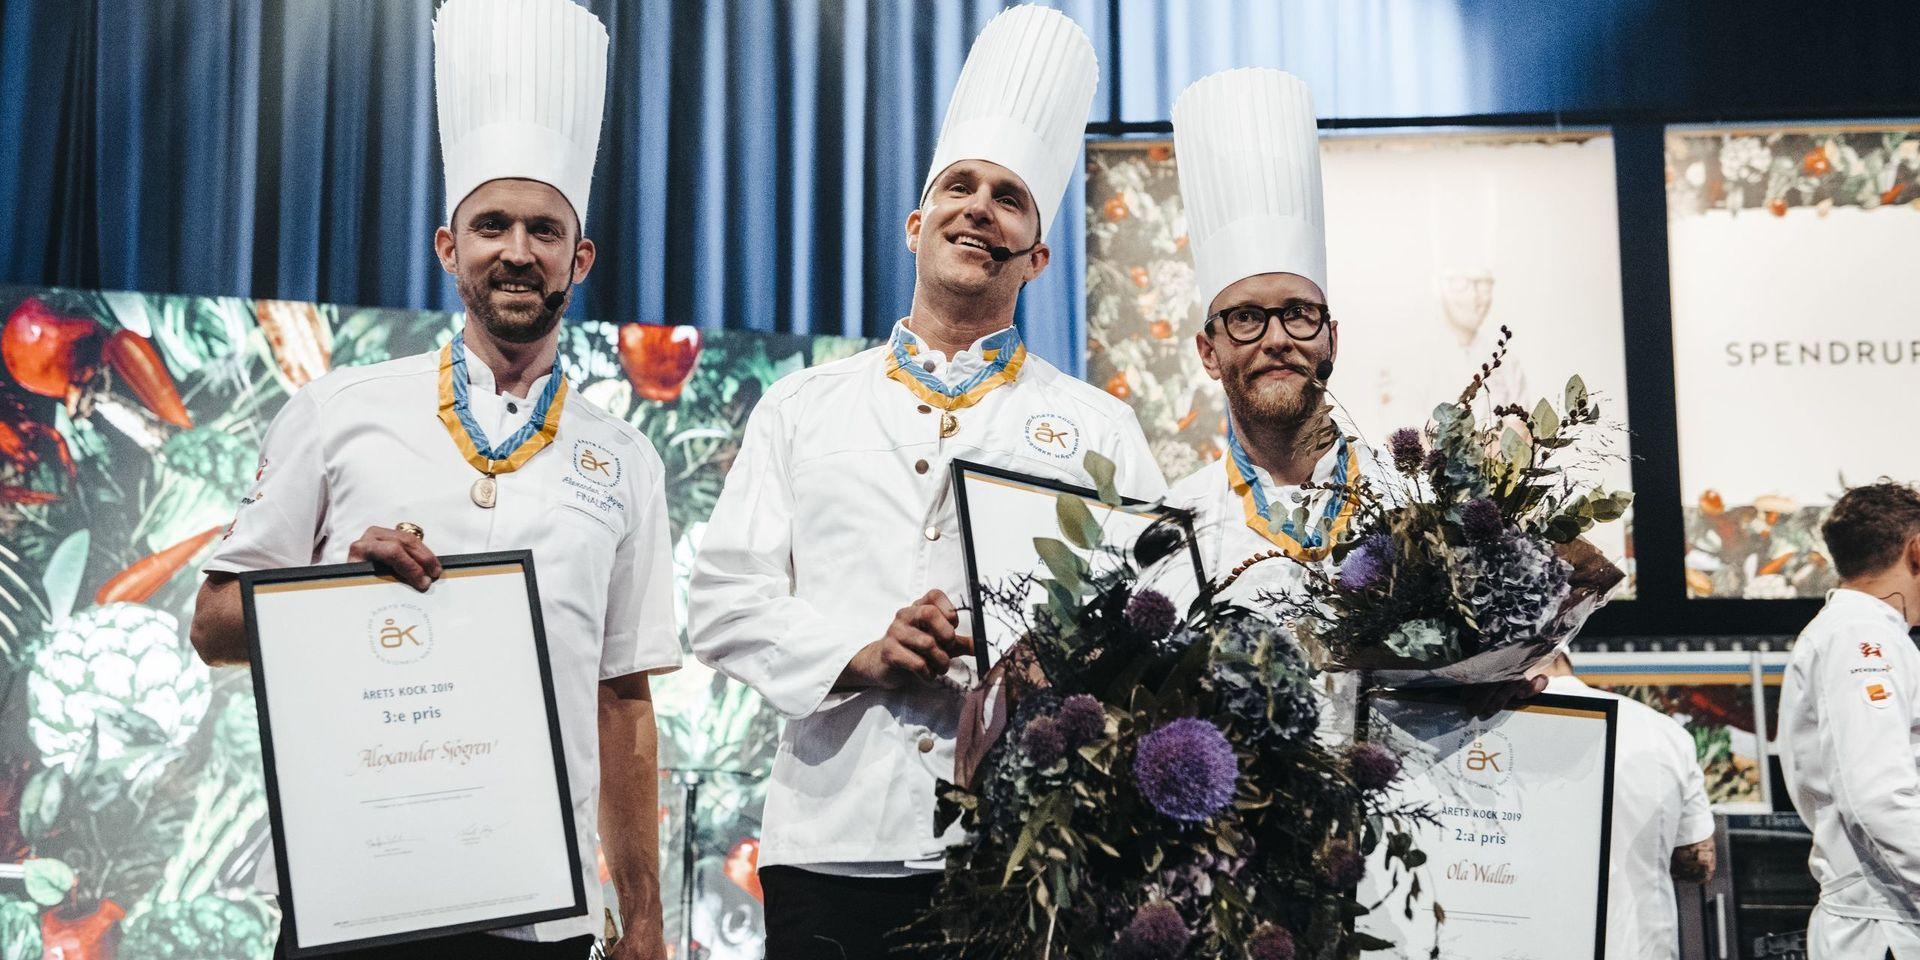 Ola Wallin (höger) tog hem andraplatsen i Årets kock. På bilden ses även trean Alexander Sjögren till vänster och vinnaren Martin Moses i mitten.